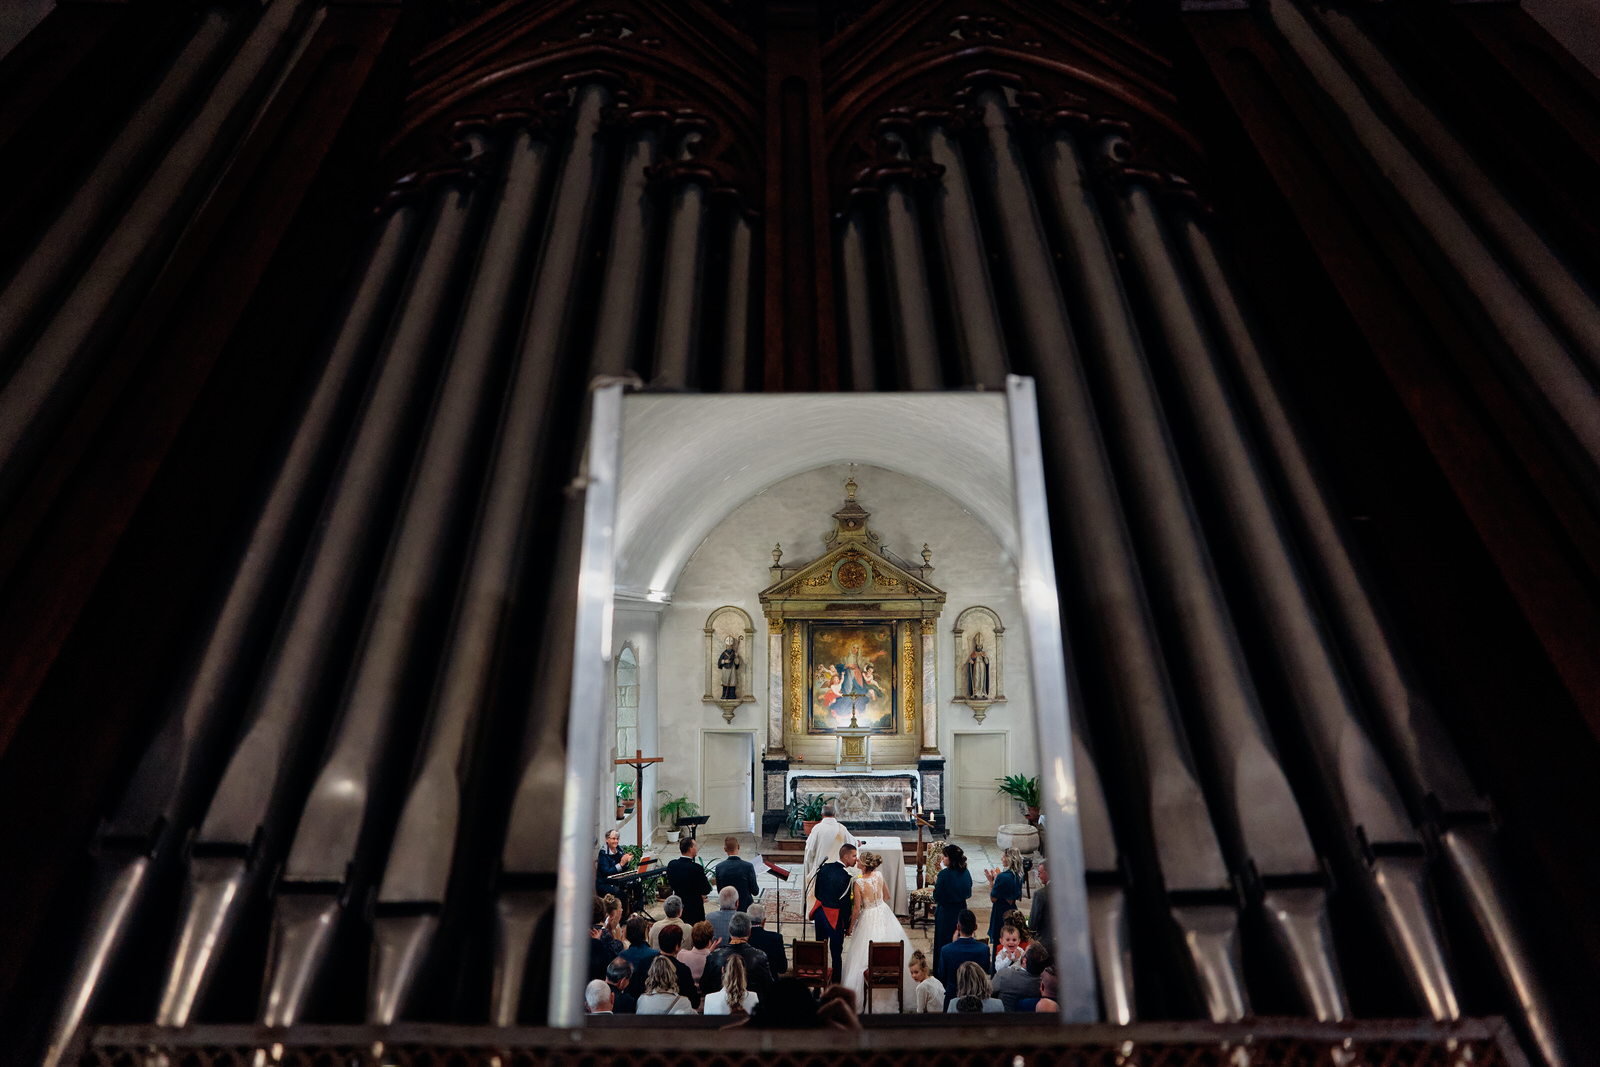 les mariés s'embrassent dans l'église la photo est prise dans le reflet d'un miroir de l'orgue